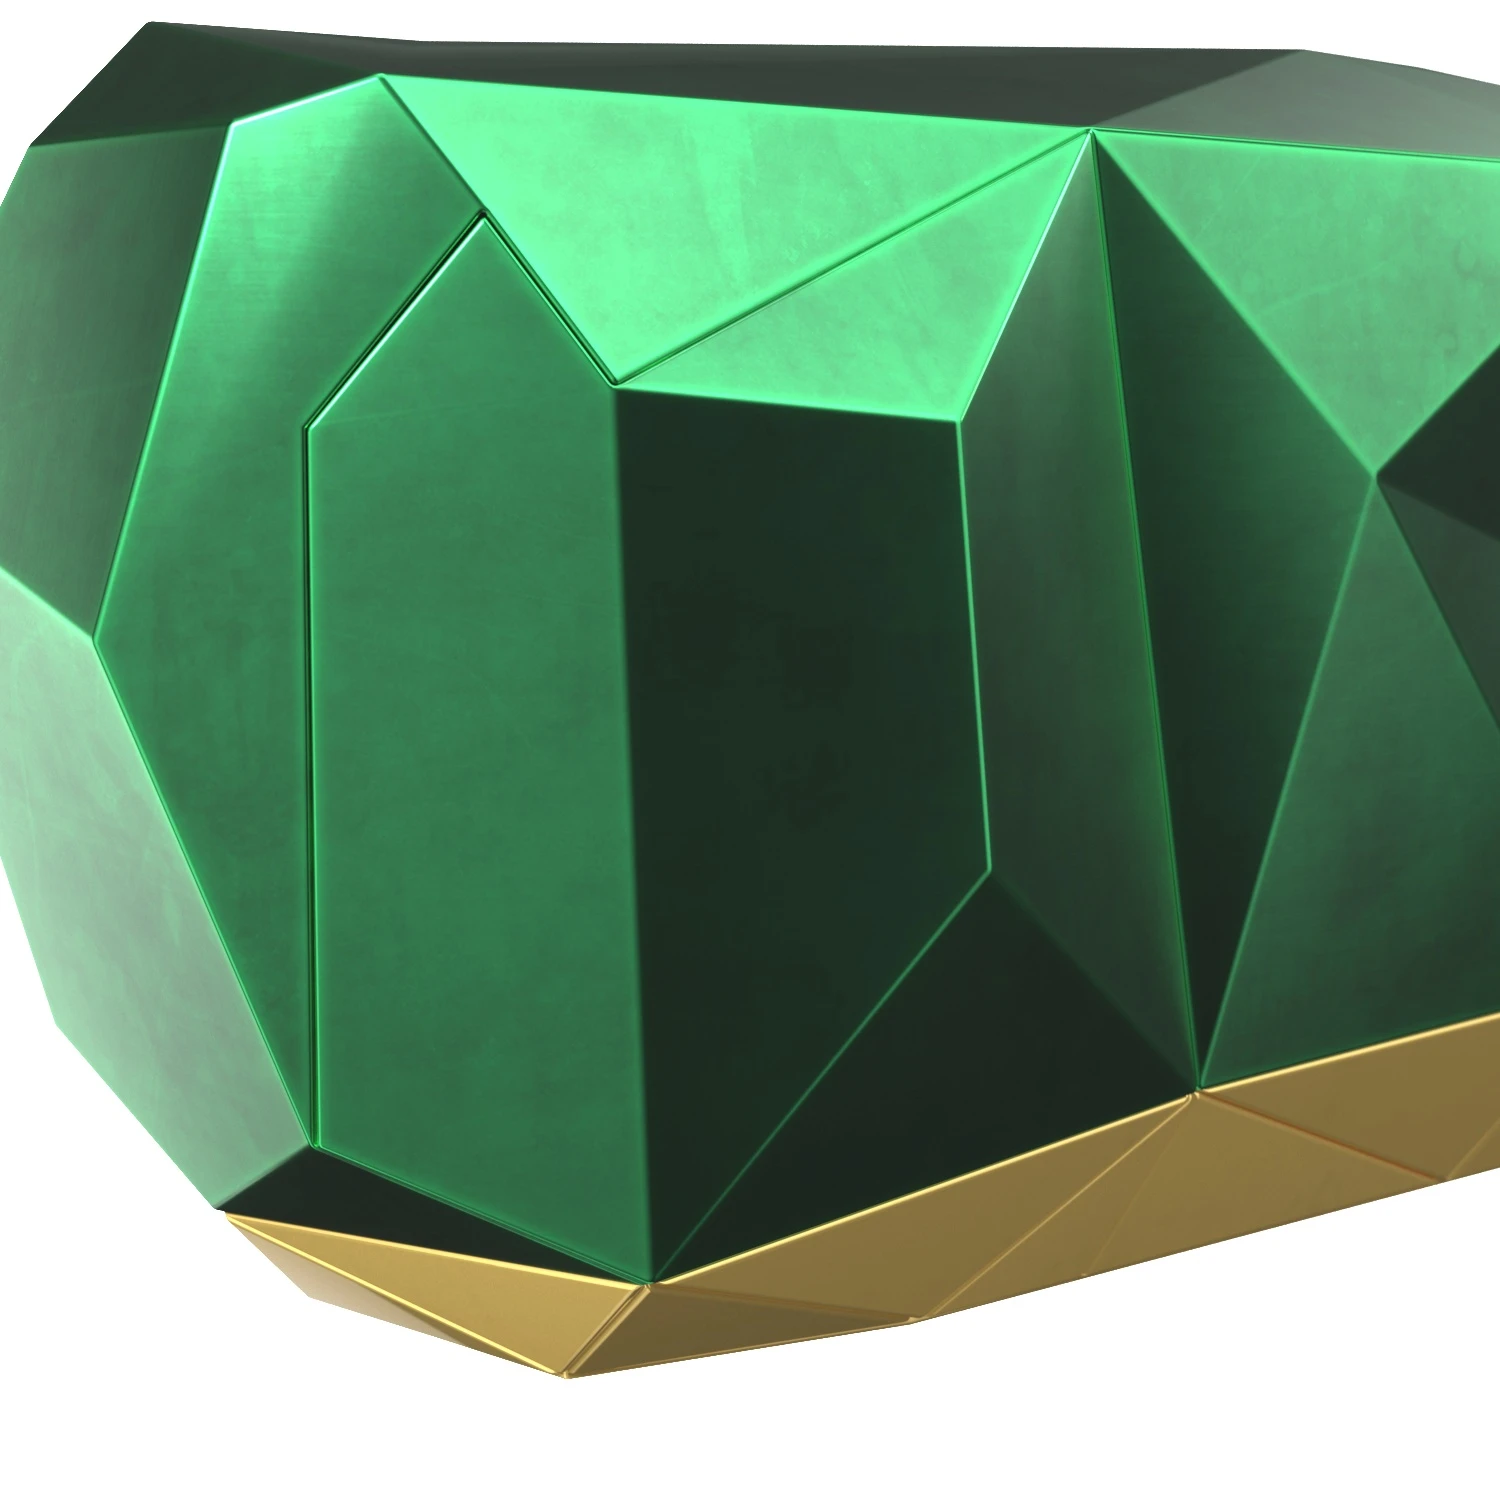 Diamond Emerald Sideboard PBR 3D Model_05